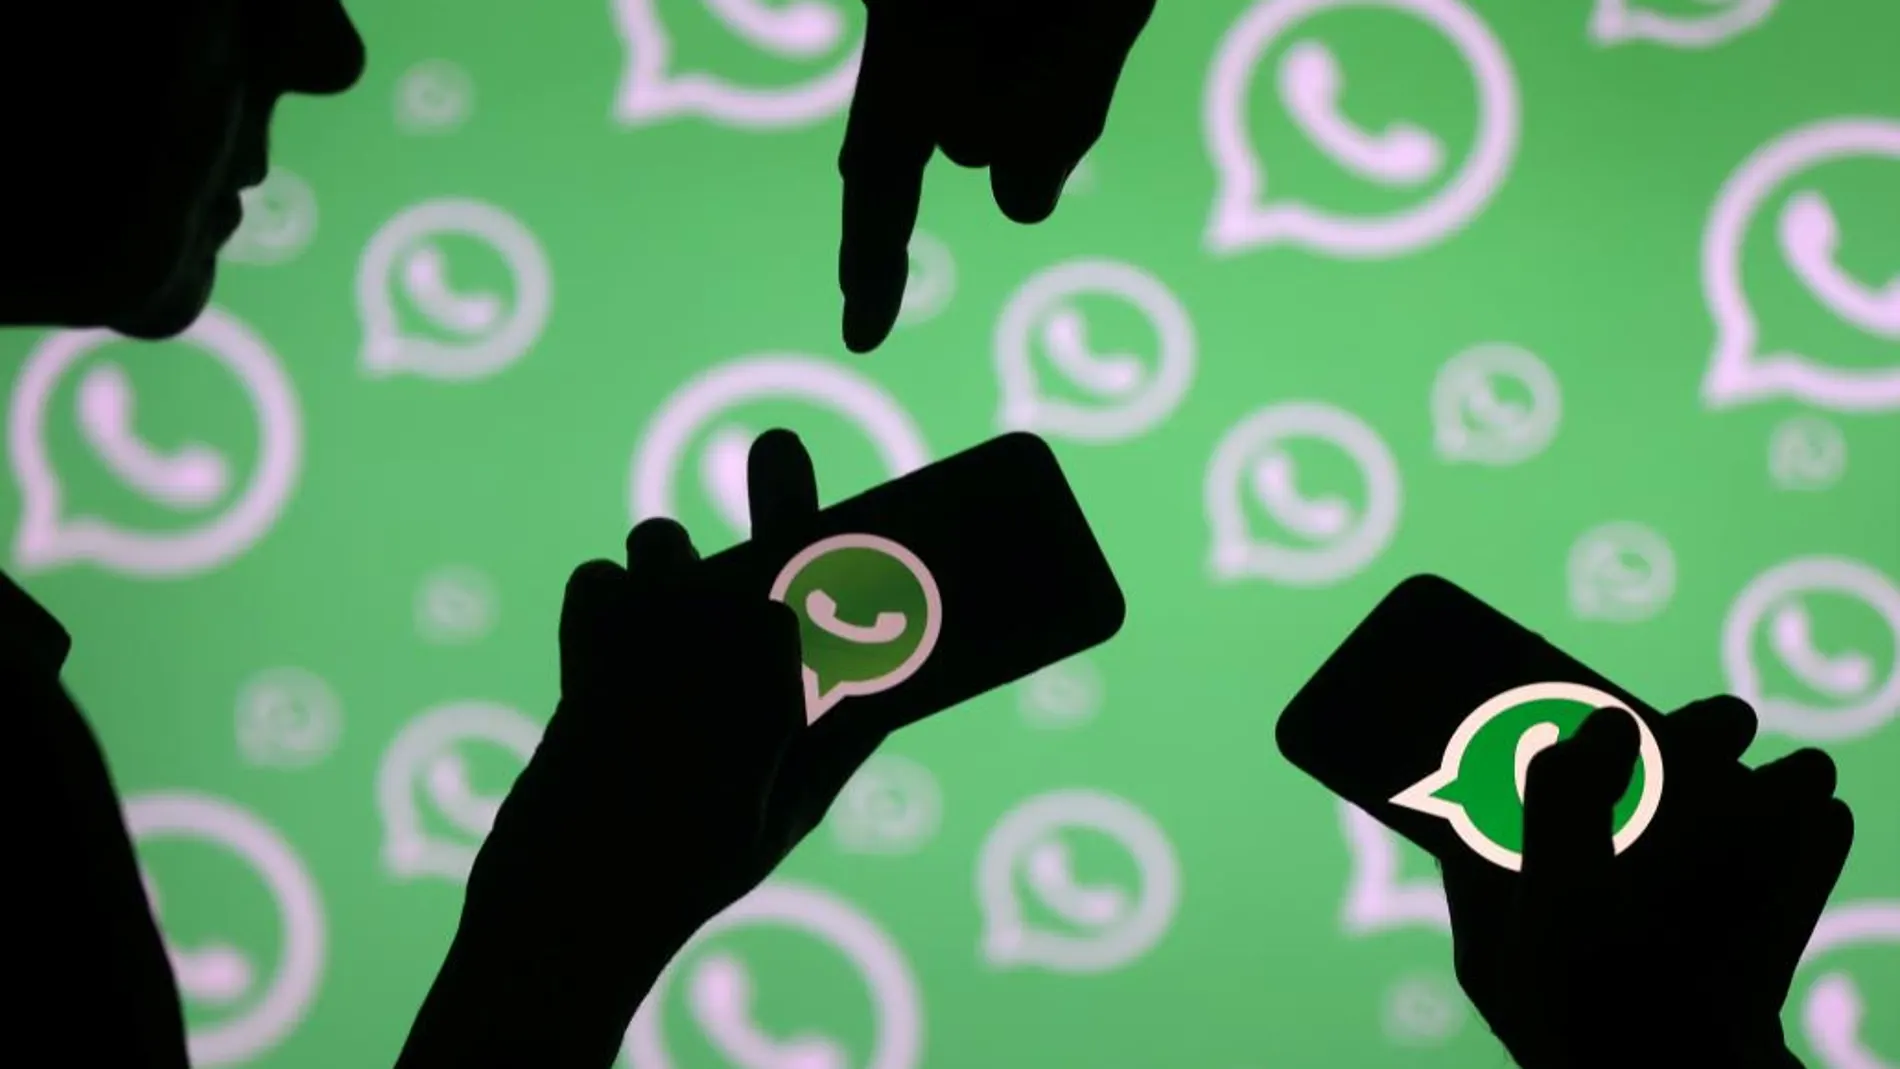 La aplicación móvil de mensajería WhatsApp ha experimentado este viernes una caída de su servicio que afecta a varios territorios de Europa y Asia